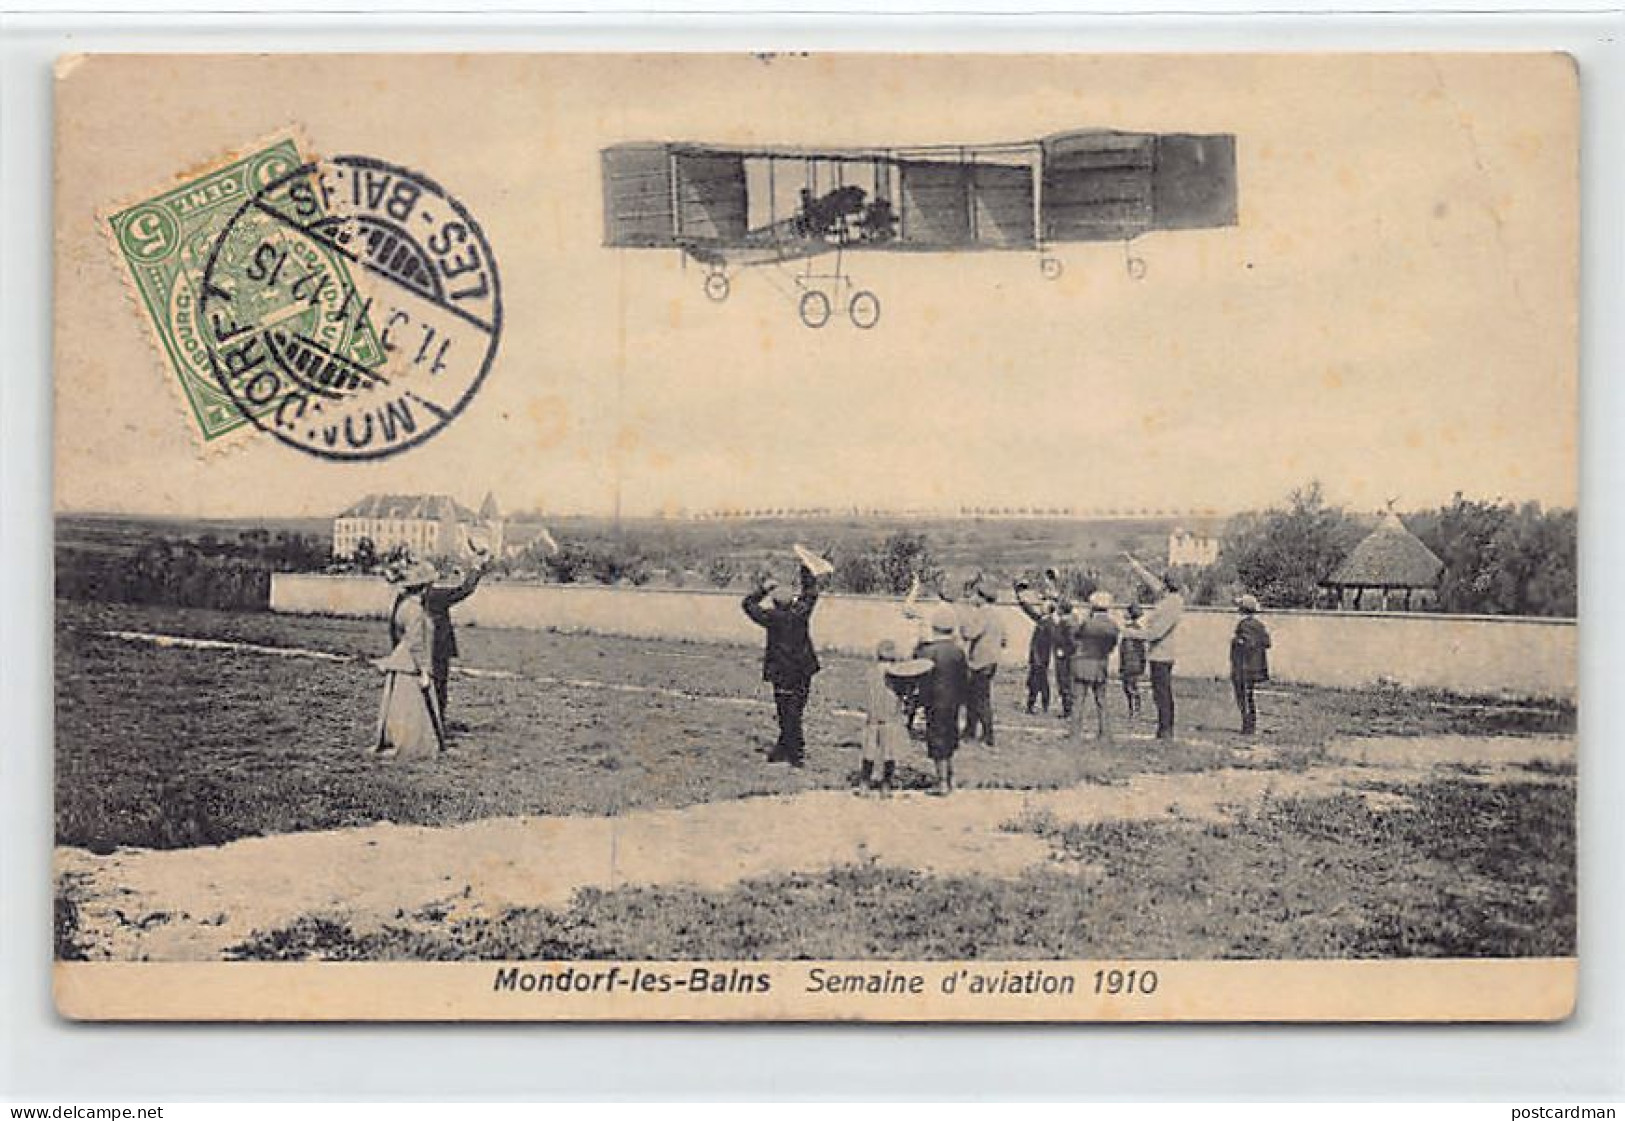 Luxembourg - MONDORF LES BAINS - Semain D'Aviation 1910 - Ed. N. Schumacher - Mondorf-les-Bains